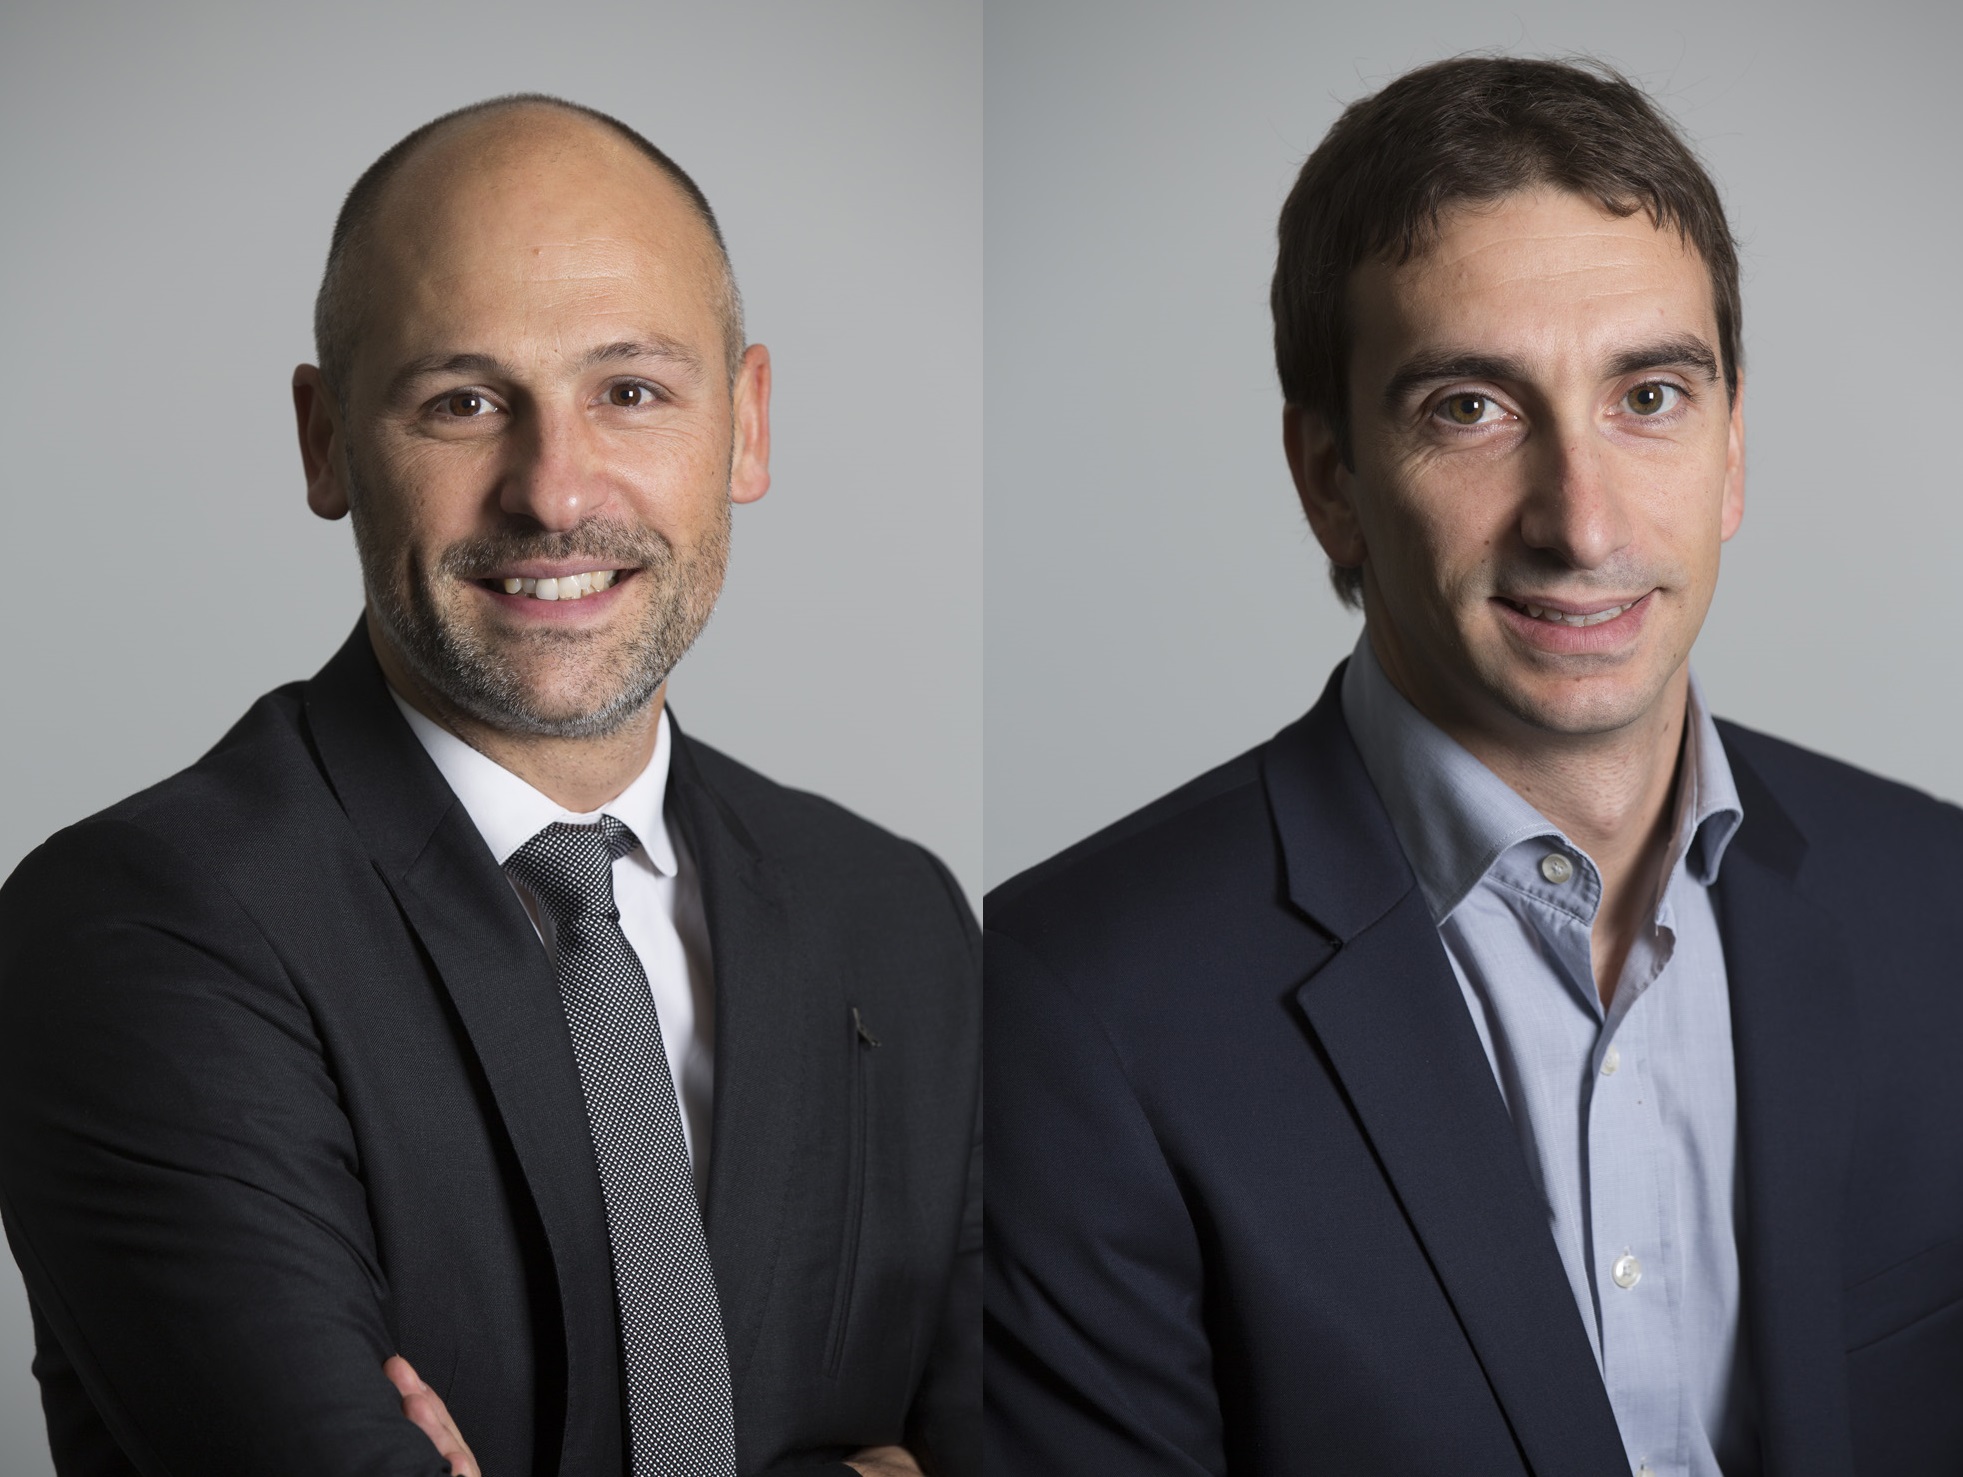 Sébastien Champion et Stéphane Lamarrigue sont nommés directeurs régionaux des ventes pour Air France - KLM - Air France